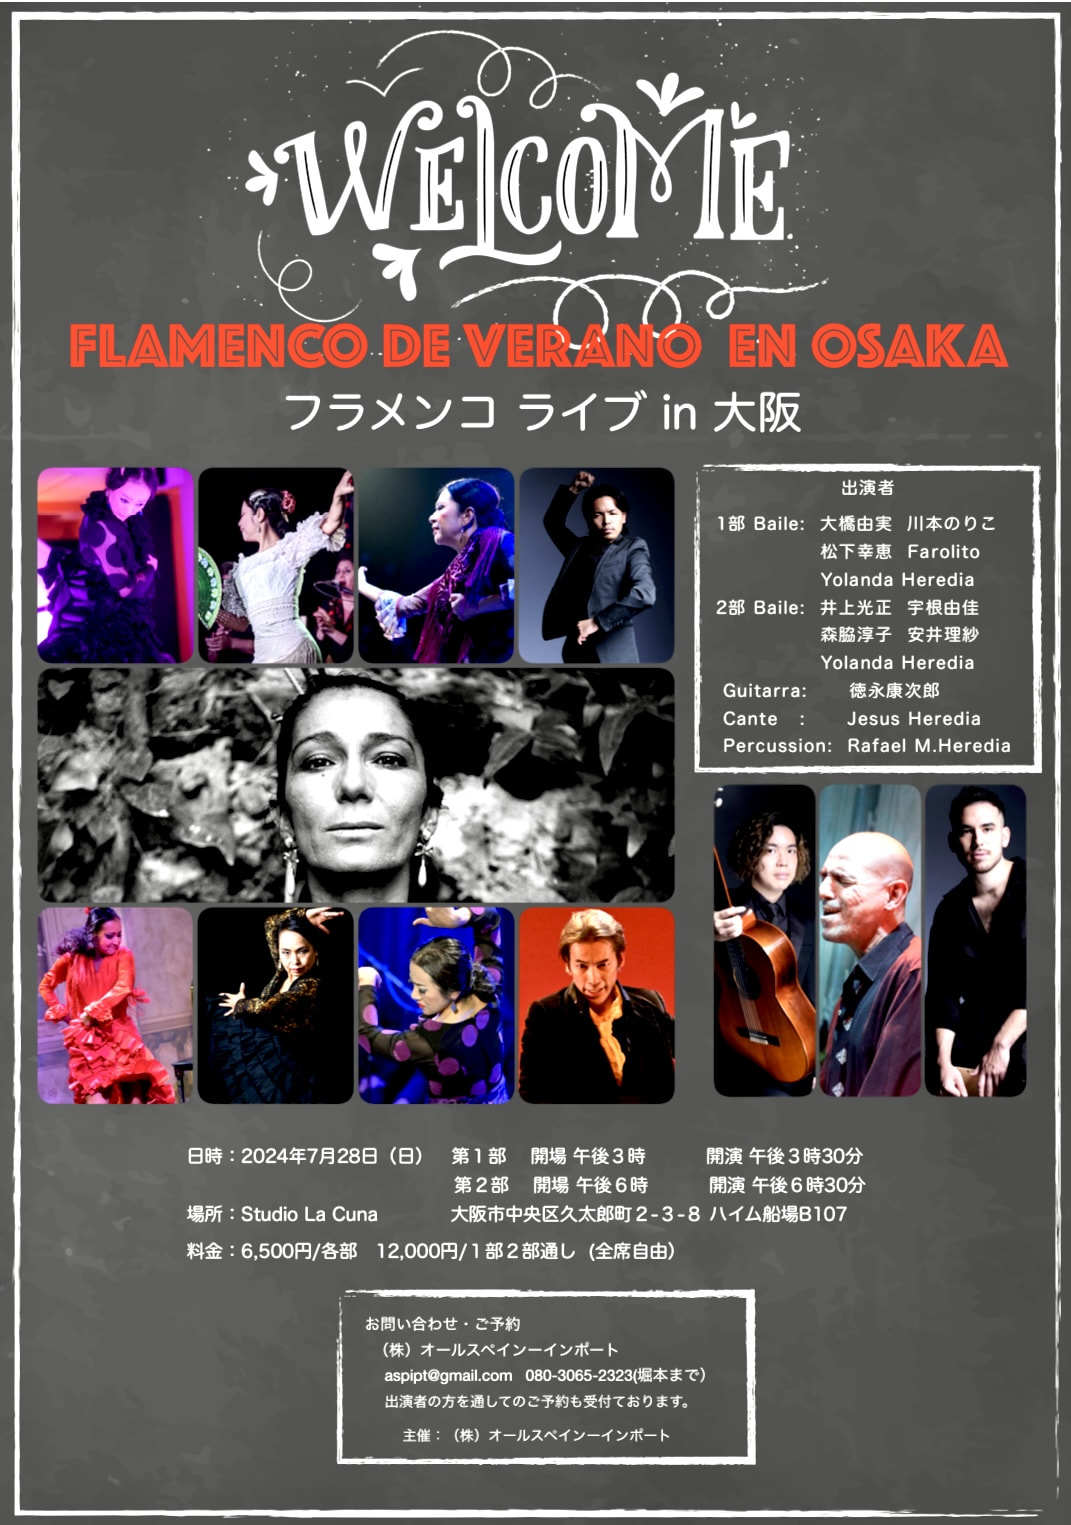 7/28(日)「FLAMENCO DE VERANO EN OSAKA」 フラメンコ ライブ in 大阪